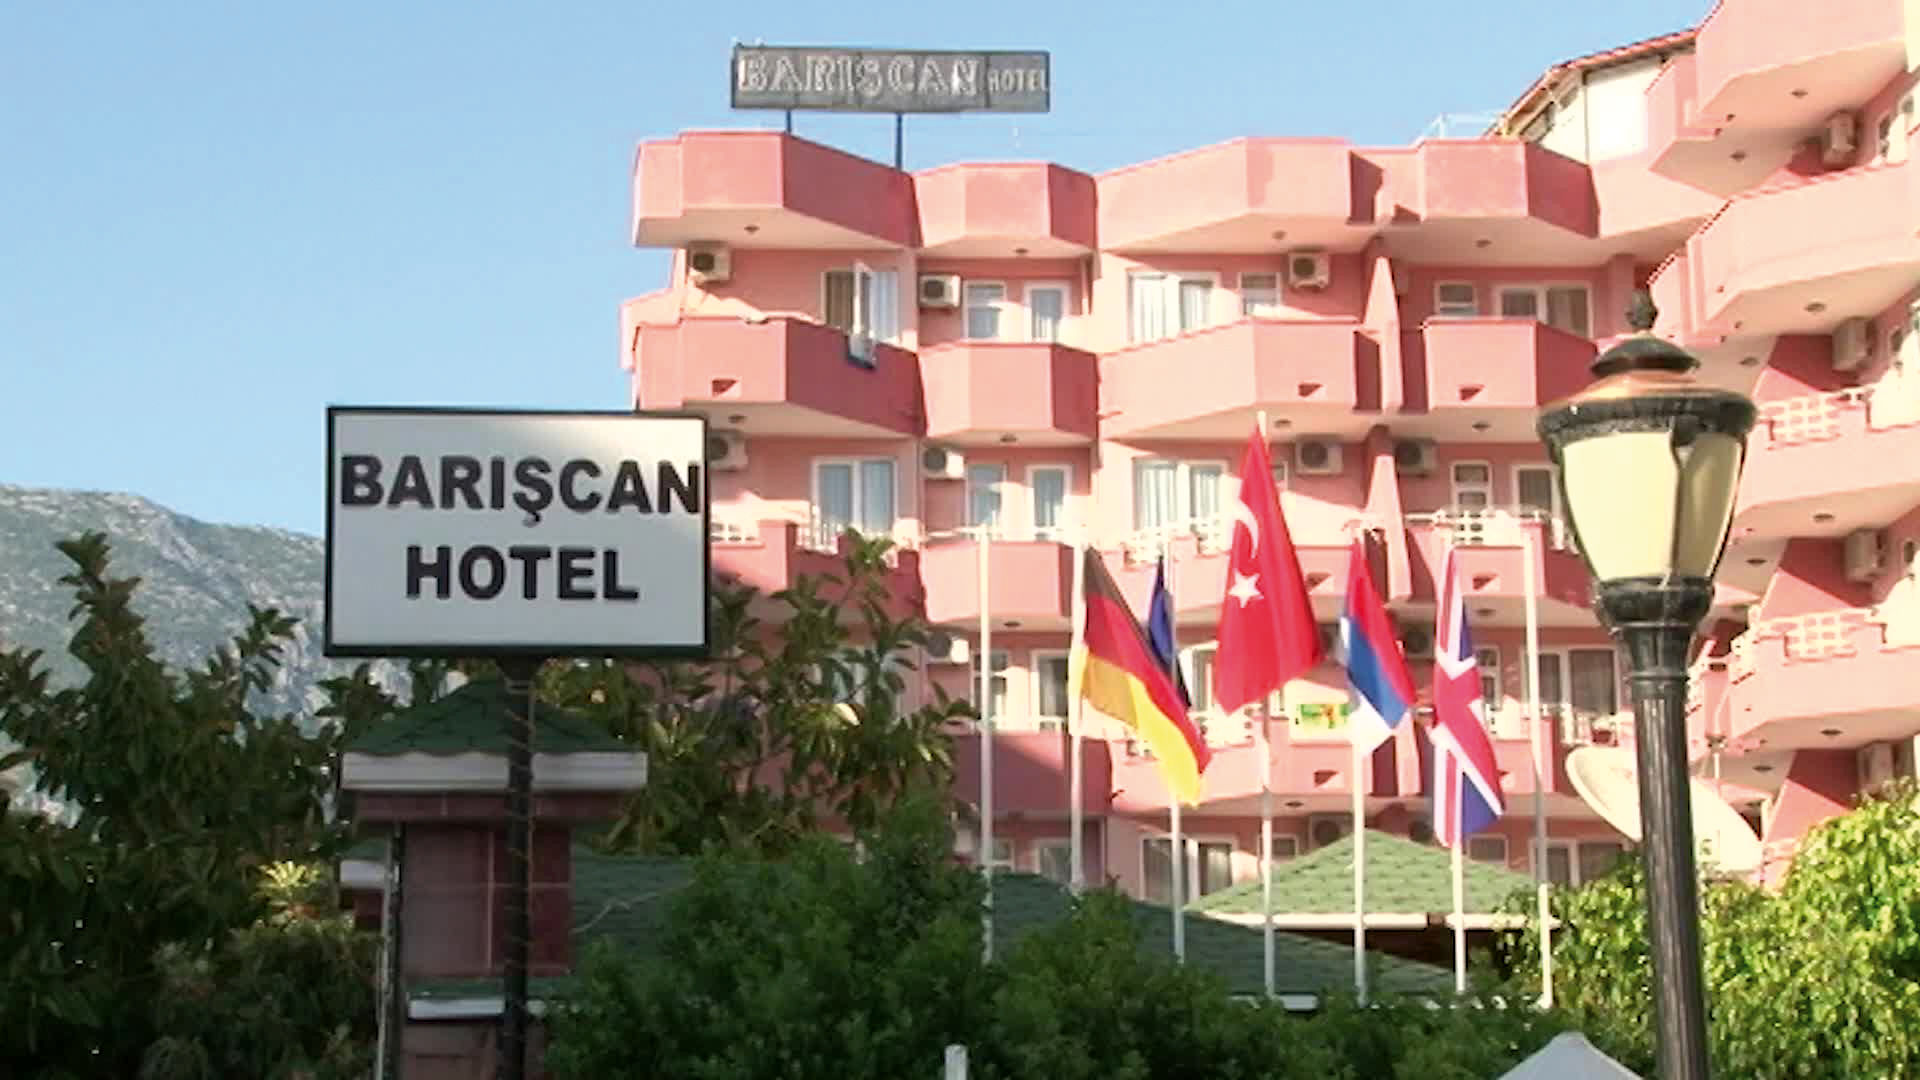 Bariscan Hotel